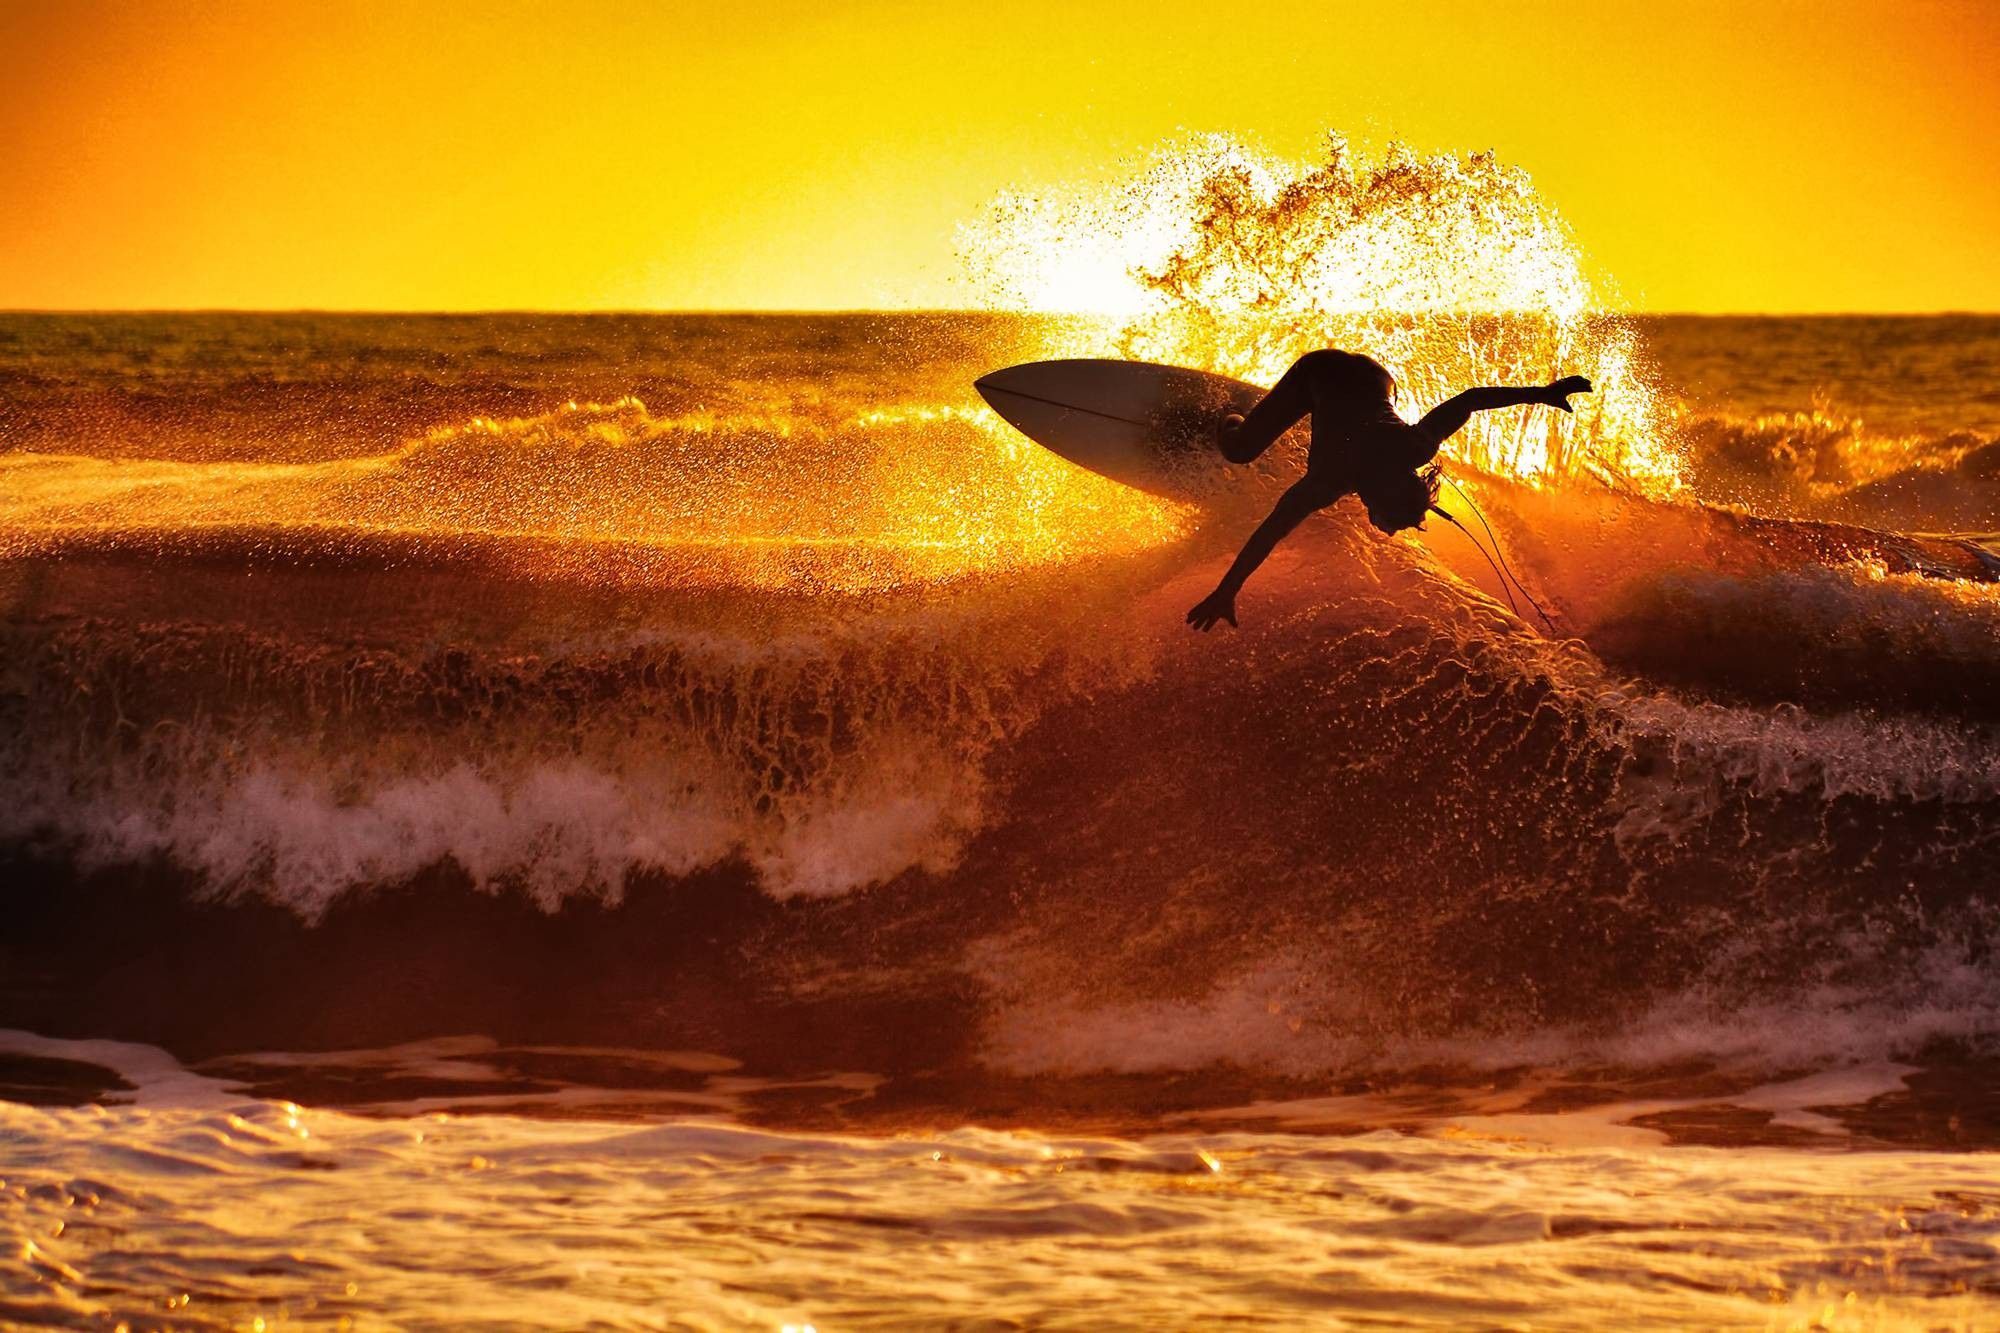 Sunset Surfing Wallpaper At Wallpaperbro